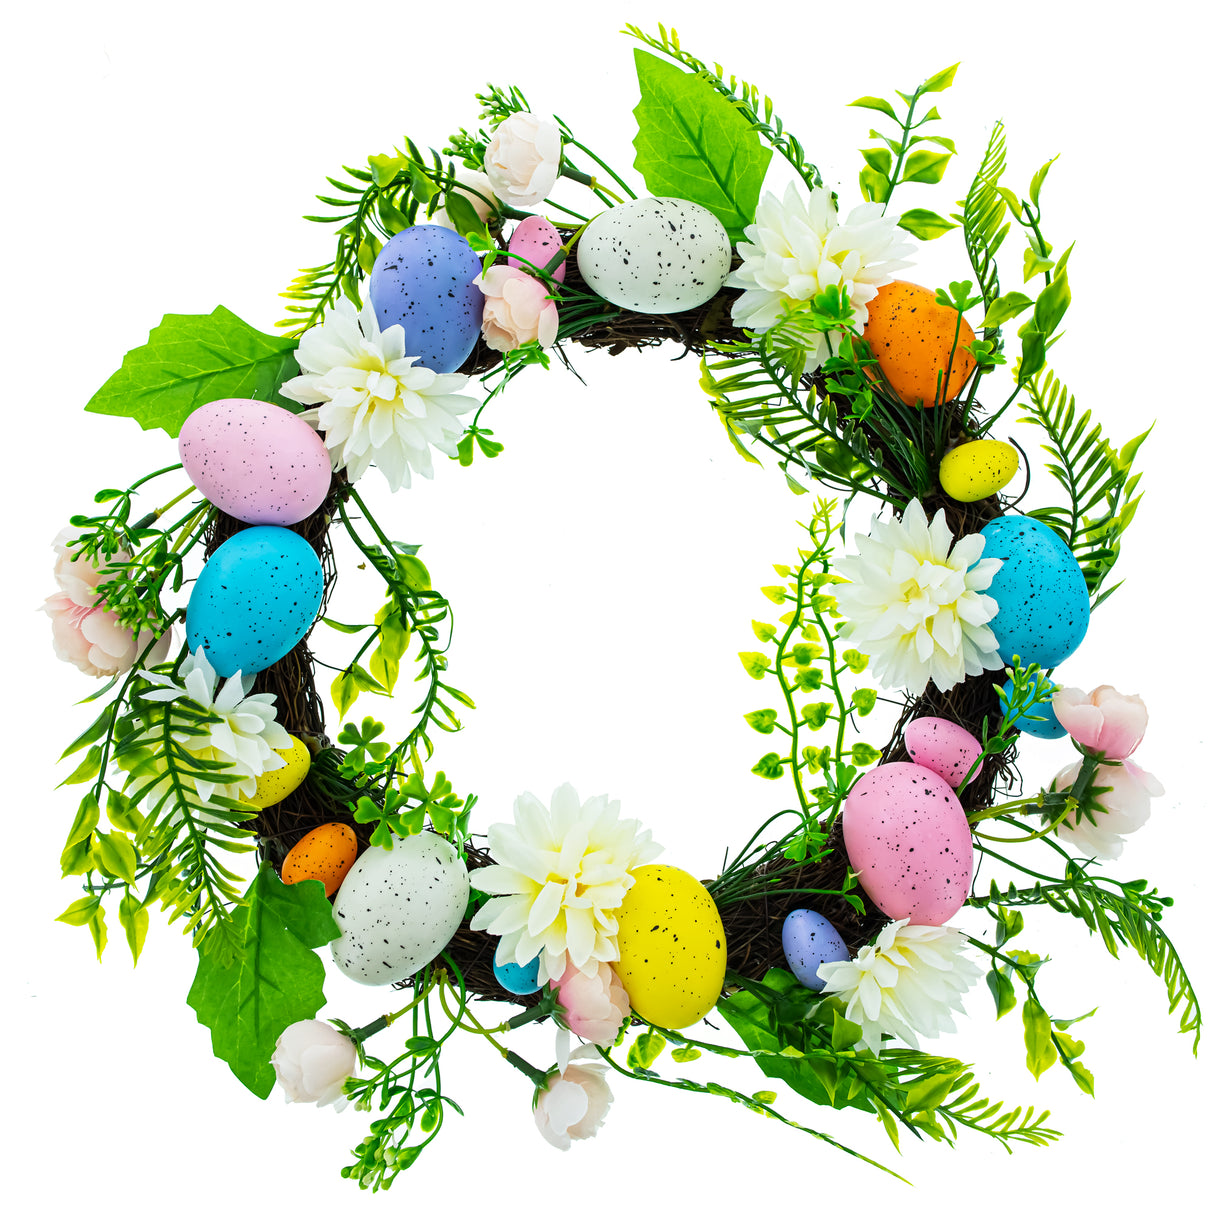 Vibrant Festivity: Multicolored Plastic Easter Egg Wreath in Multi color, Round shape